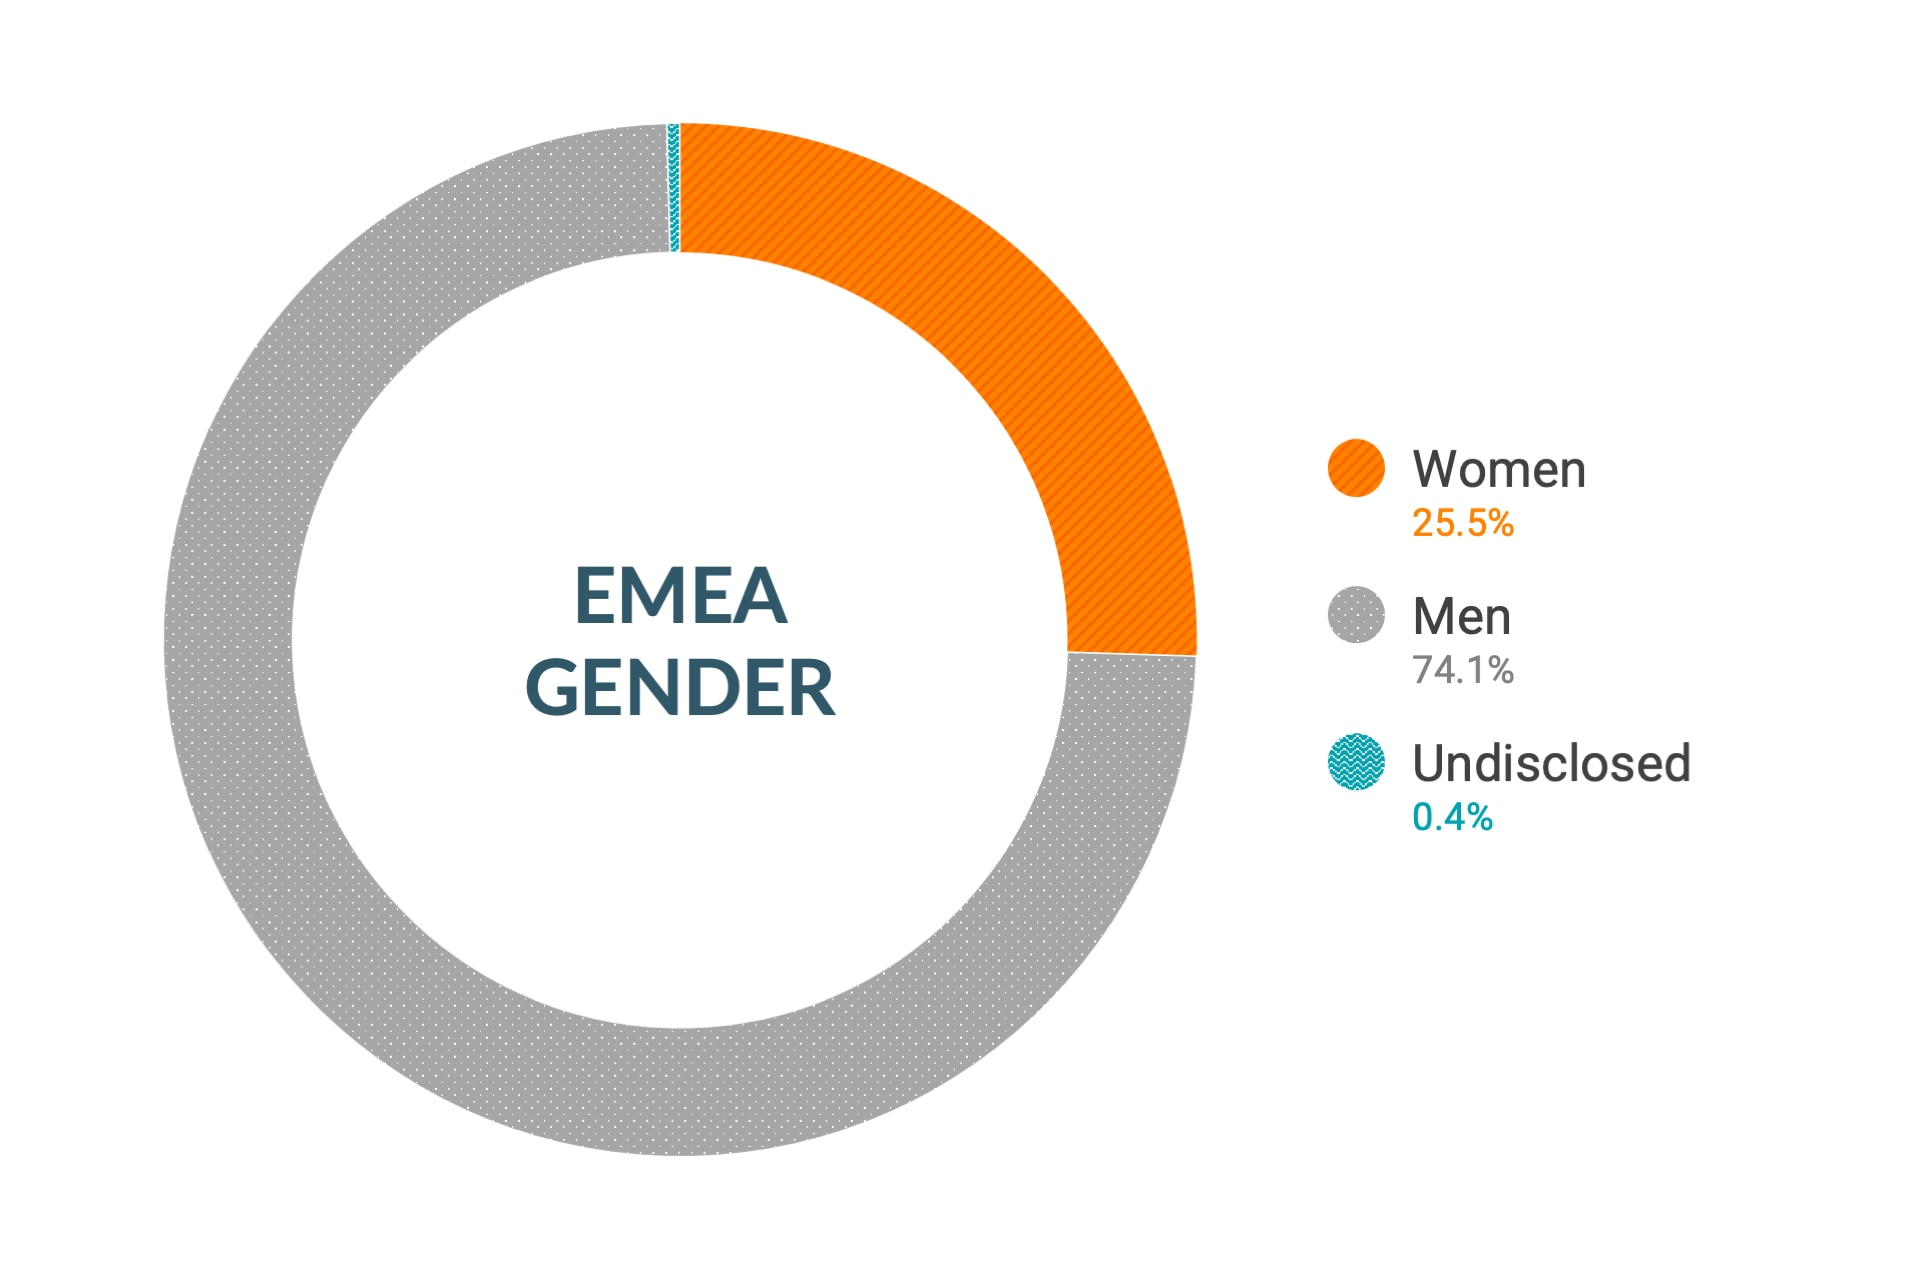 Dati Cloudera su diversità e inclusione di genere in EMEA: donne 26,8%, uomini 72,8%, non dichiarato 0,4%